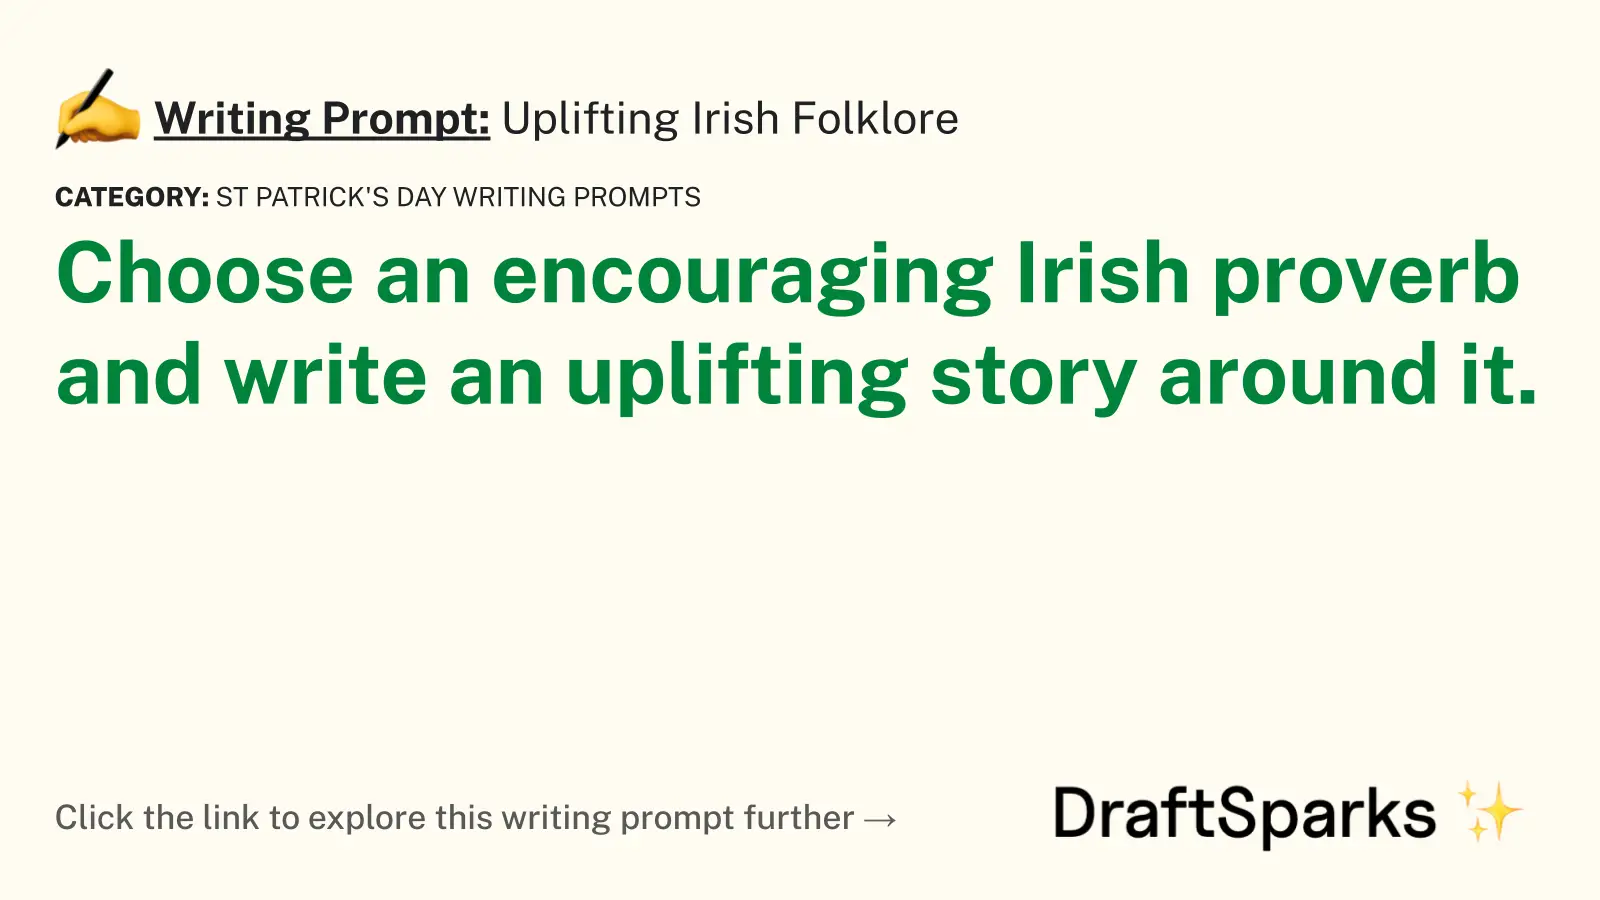 Uplifting Irish Folklore